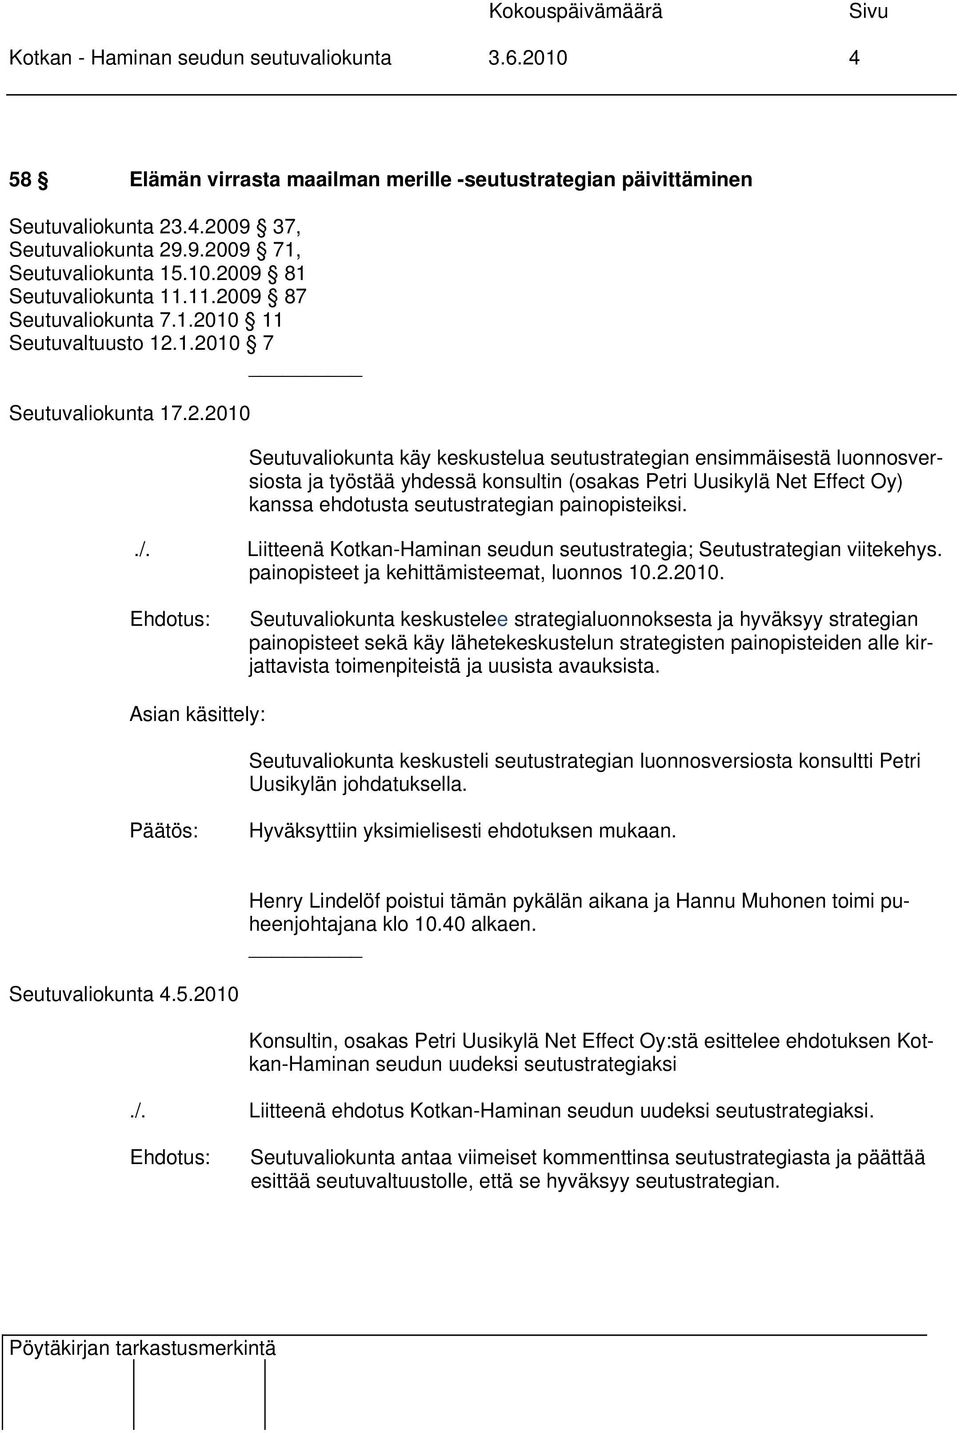 (osakas Petri Uusikylä Net Effect Oy) kanssa ehdotusta seutustrategian painopisteiksi../. Liitteenä Kotkan-Haminan seudun seutustrategia; Seutustrategian viitekehys.